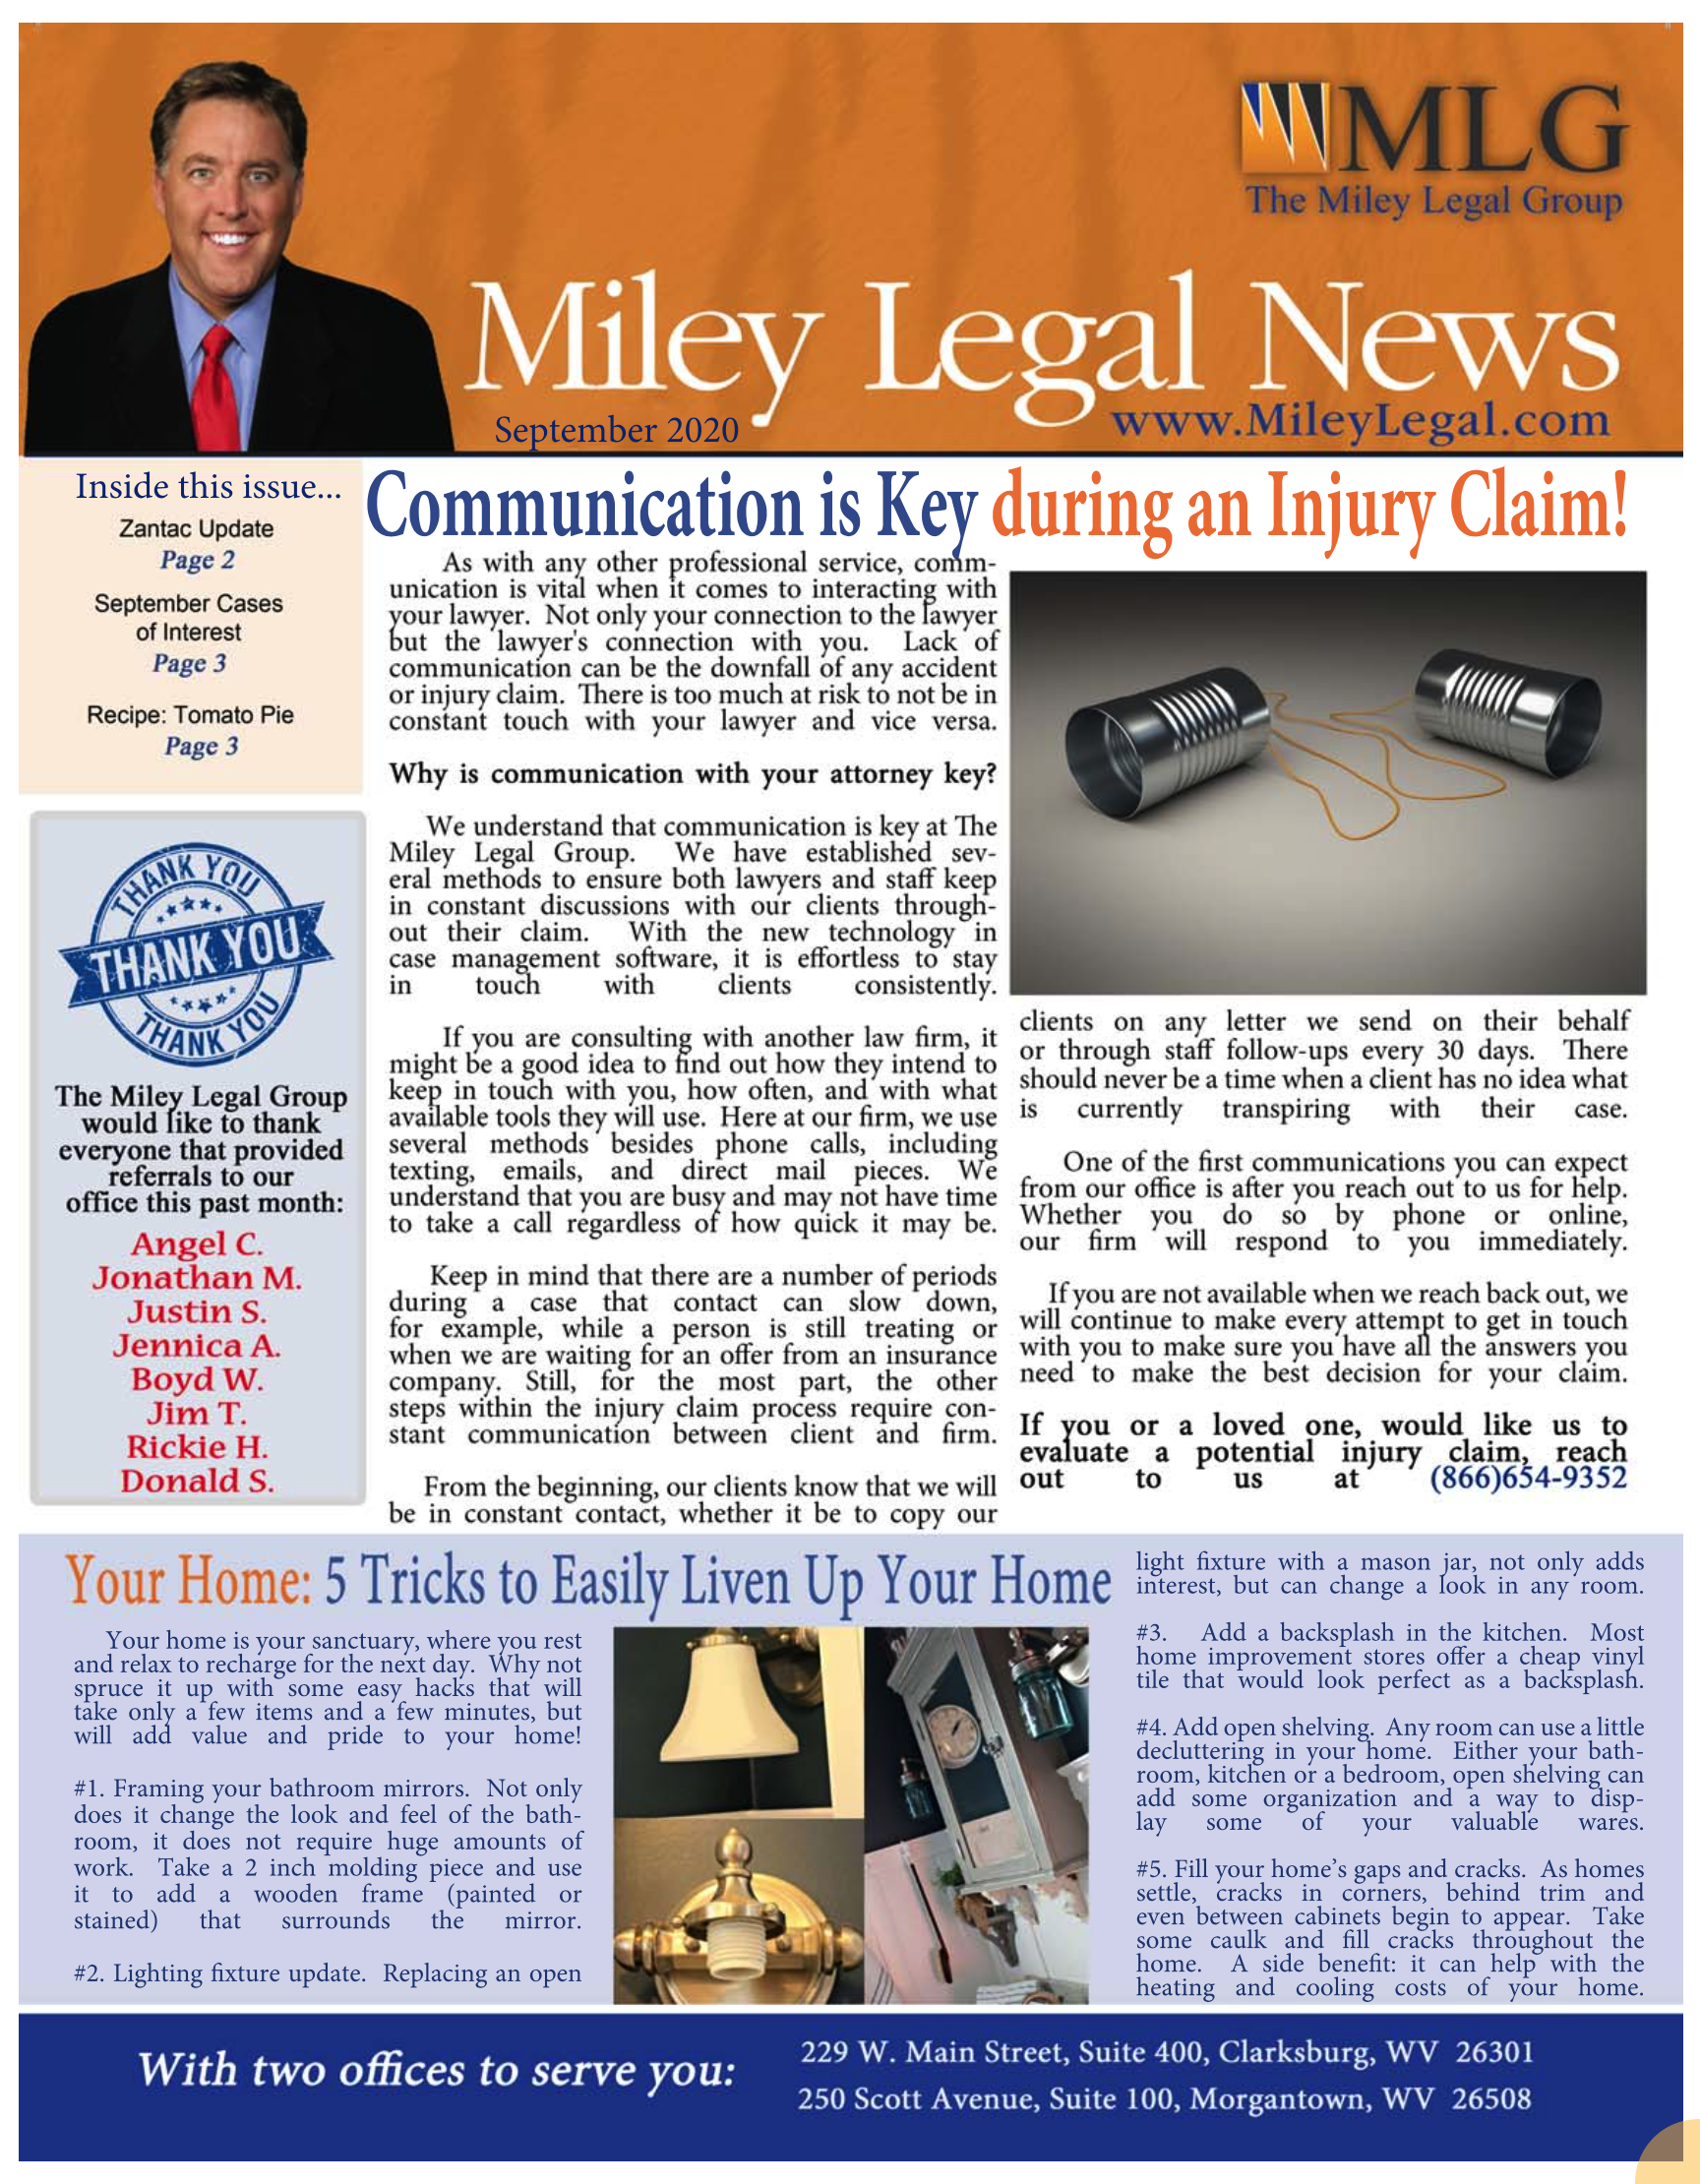 Miley Legal Newsletter - September 2020